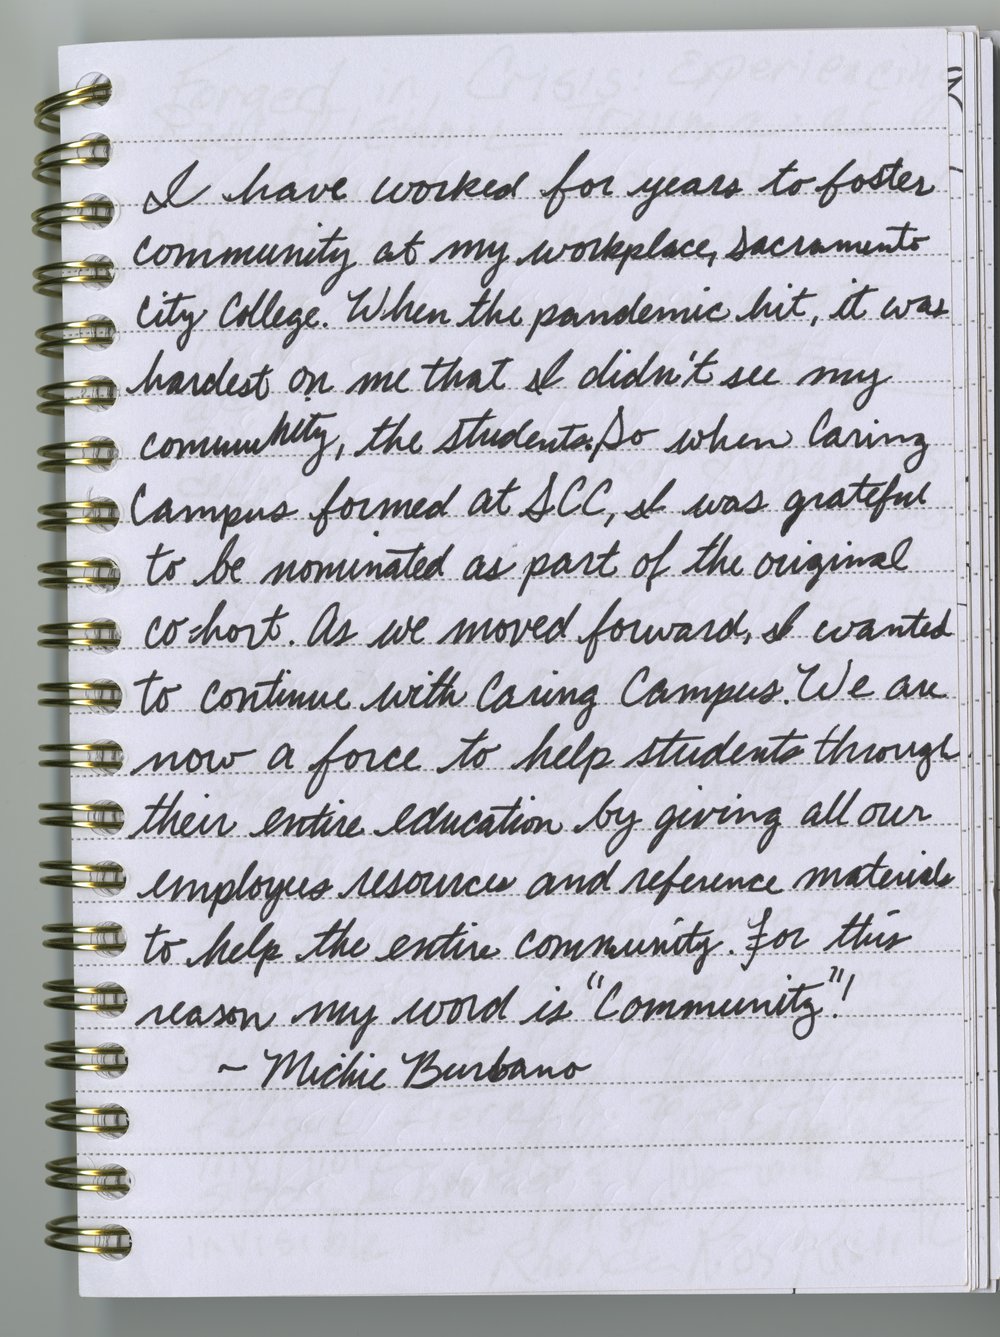 Michie Dawn Kuratomi Burbano's handwritten journal entry.